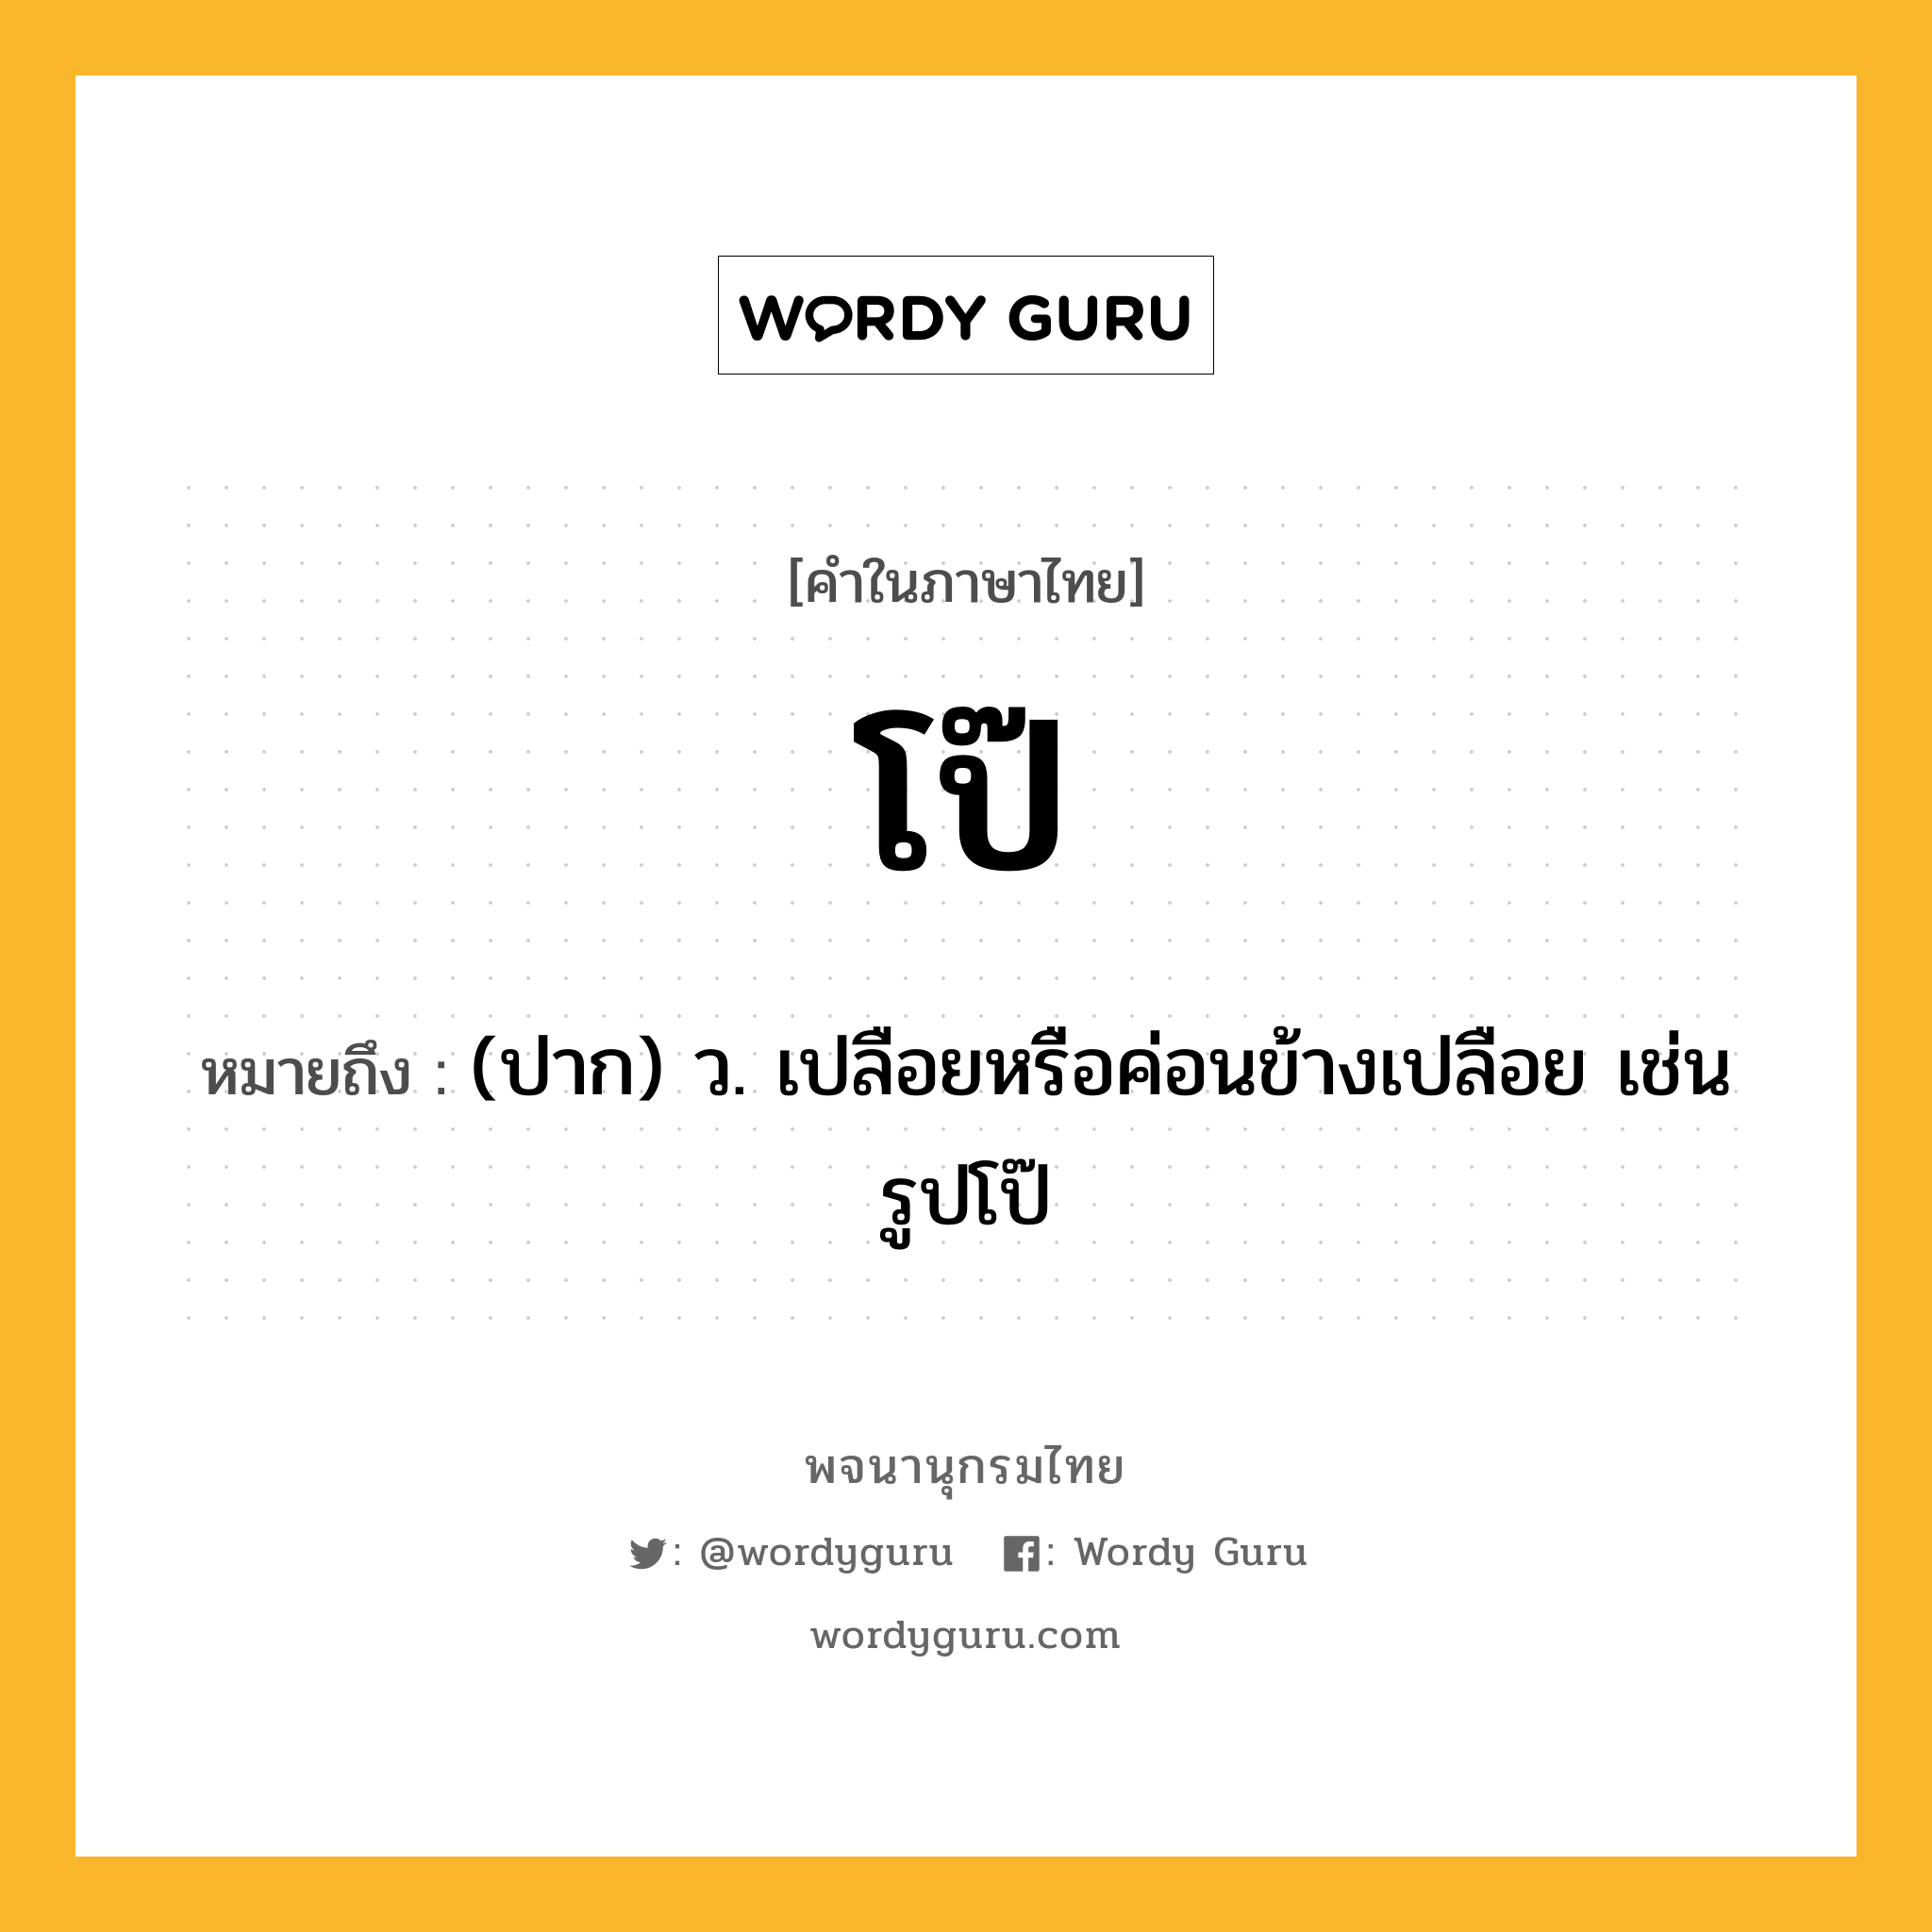 โป๊ หมายถึงอะไร?, คำในภาษาไทย โป๊ หมายถึง (ปาก) ว. เปลือยหรือค่อนข้างเปลือย เช่น รูปโป๊